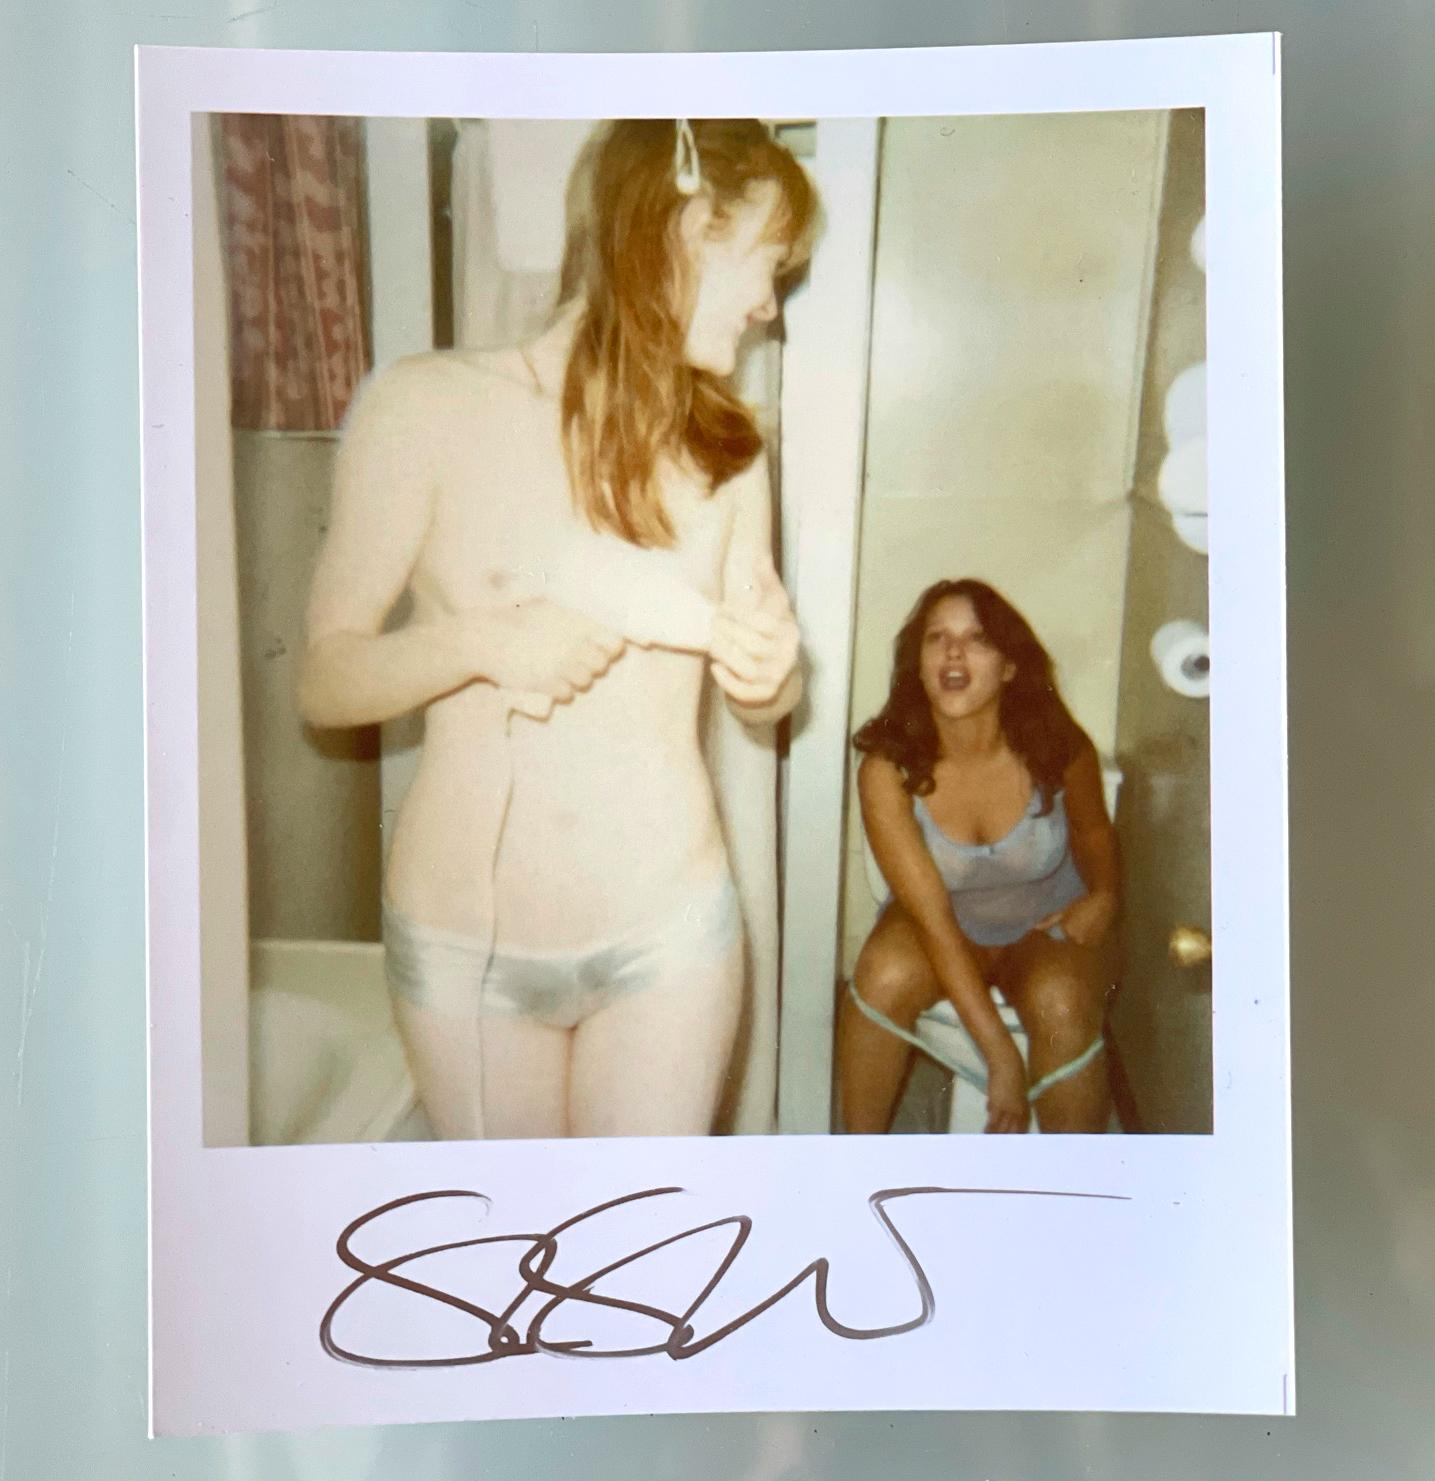 Stefanie Schneiders Mini
Prom Night (Bis dass der Tod uns scheidet) - 2005

vorne signiert, nicht montiert. 
Digitale Farbfotografien auf der Grundlage eines Polaroids. 

Offene Editionen in Polaroidgröße 1999-2013
10.7 x 8,8cm (Bild